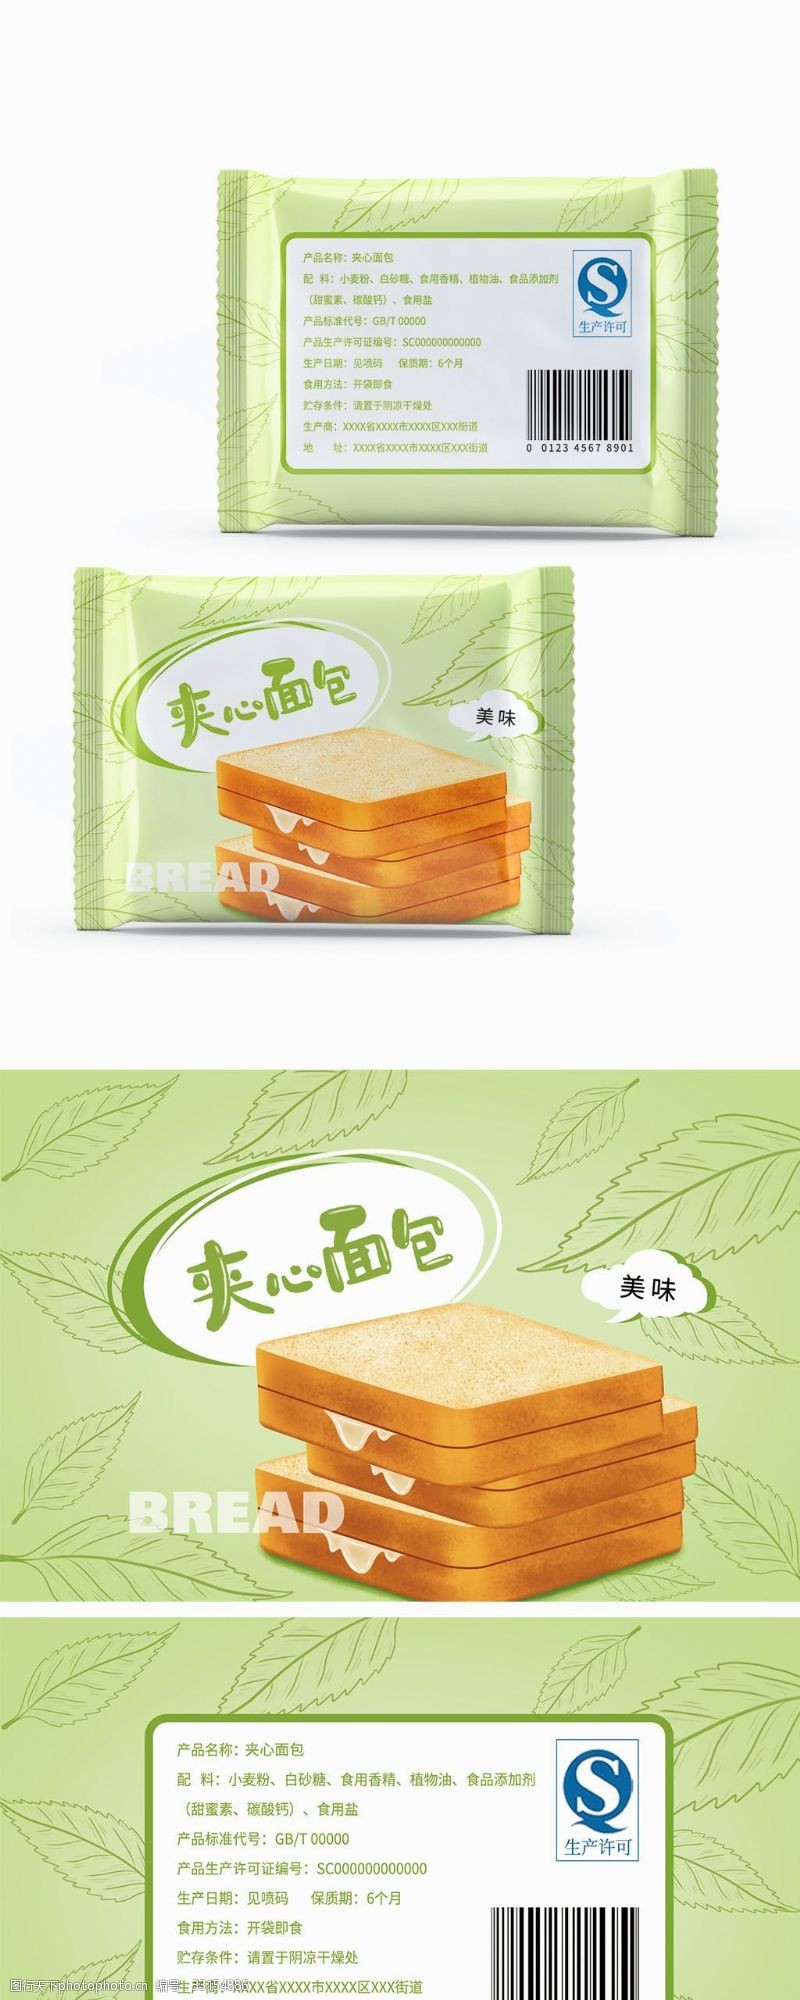 原创食品包装小面包系列夹心面包包装插画